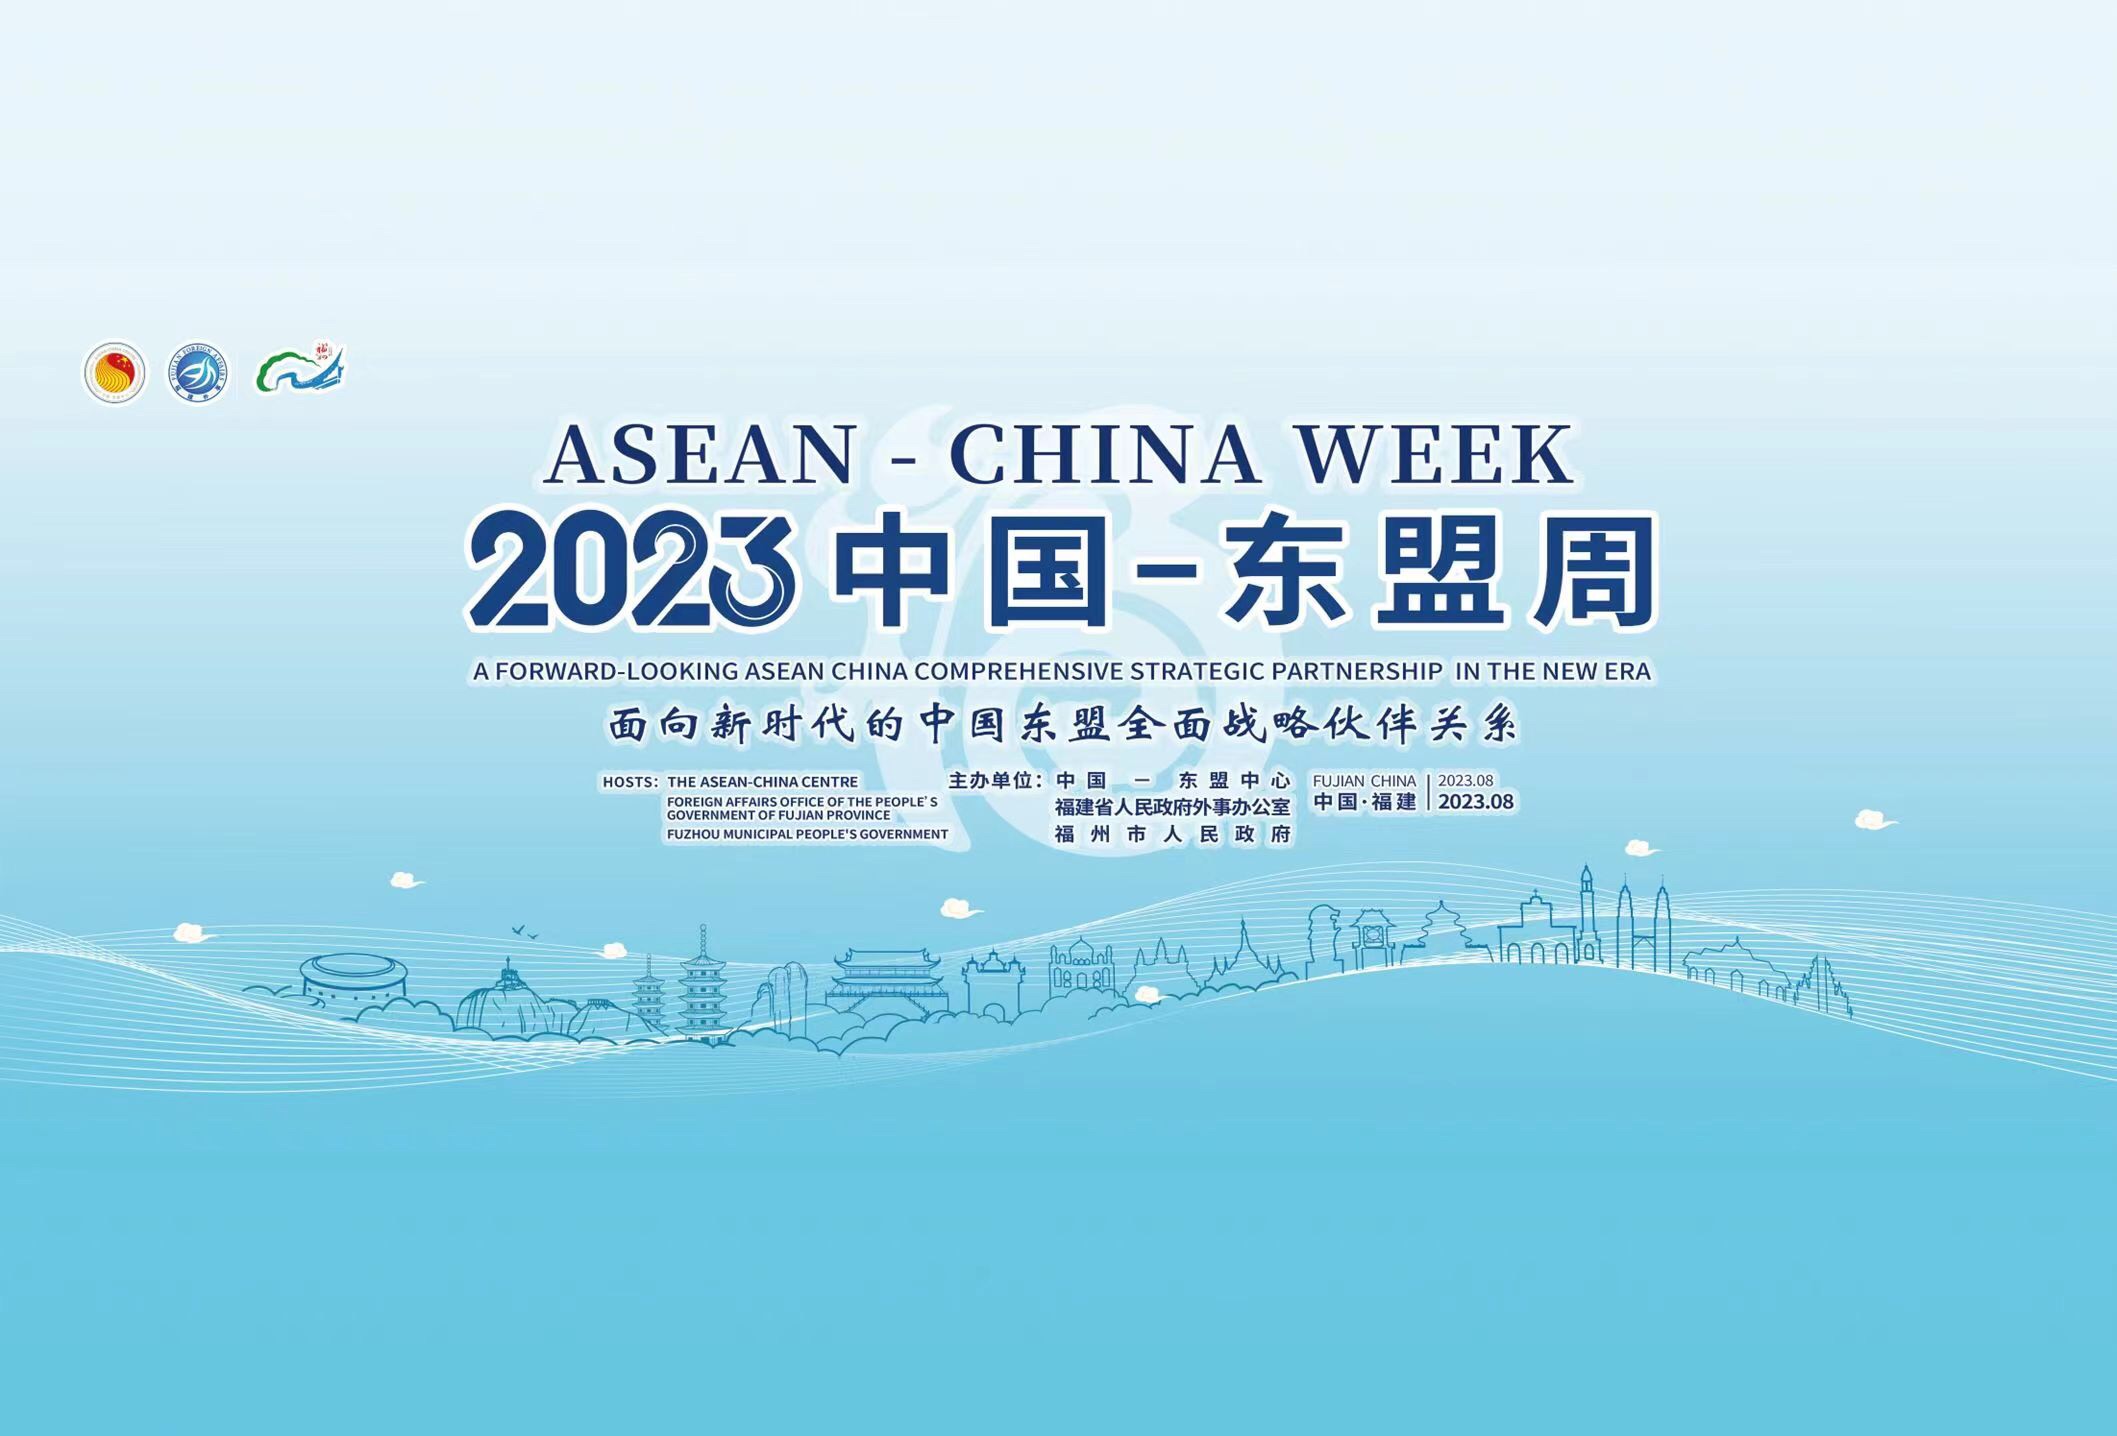 “2023中国—东盟周”将于明日开幕